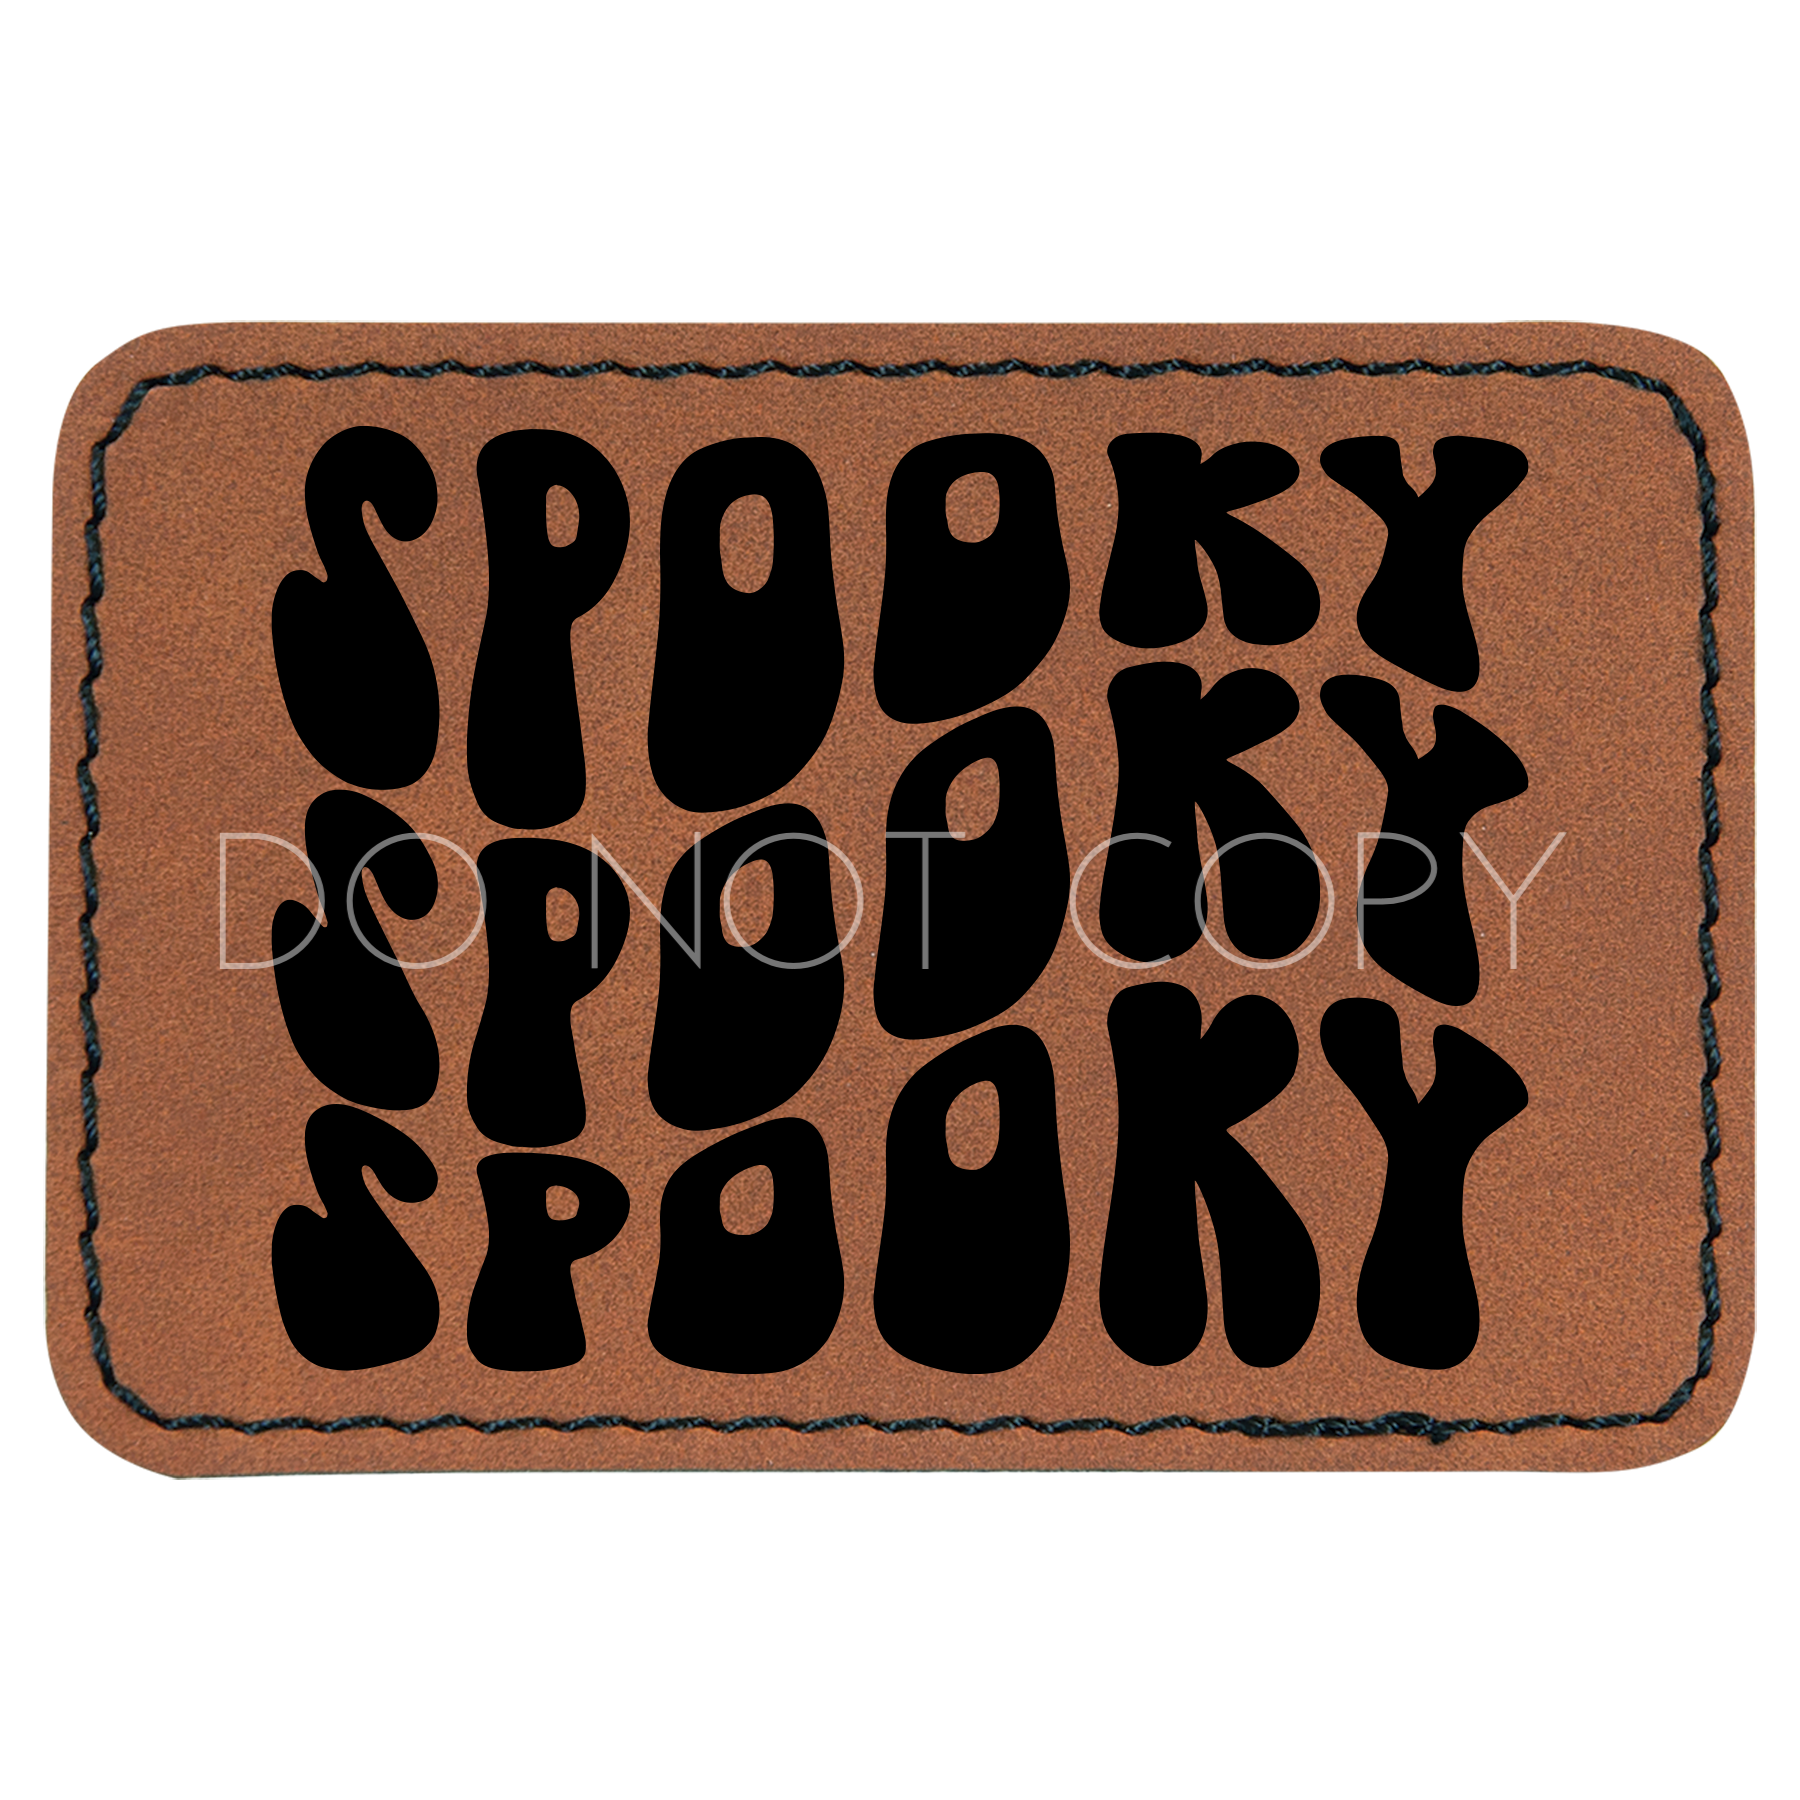 Spooky Spooky Spooky Patch